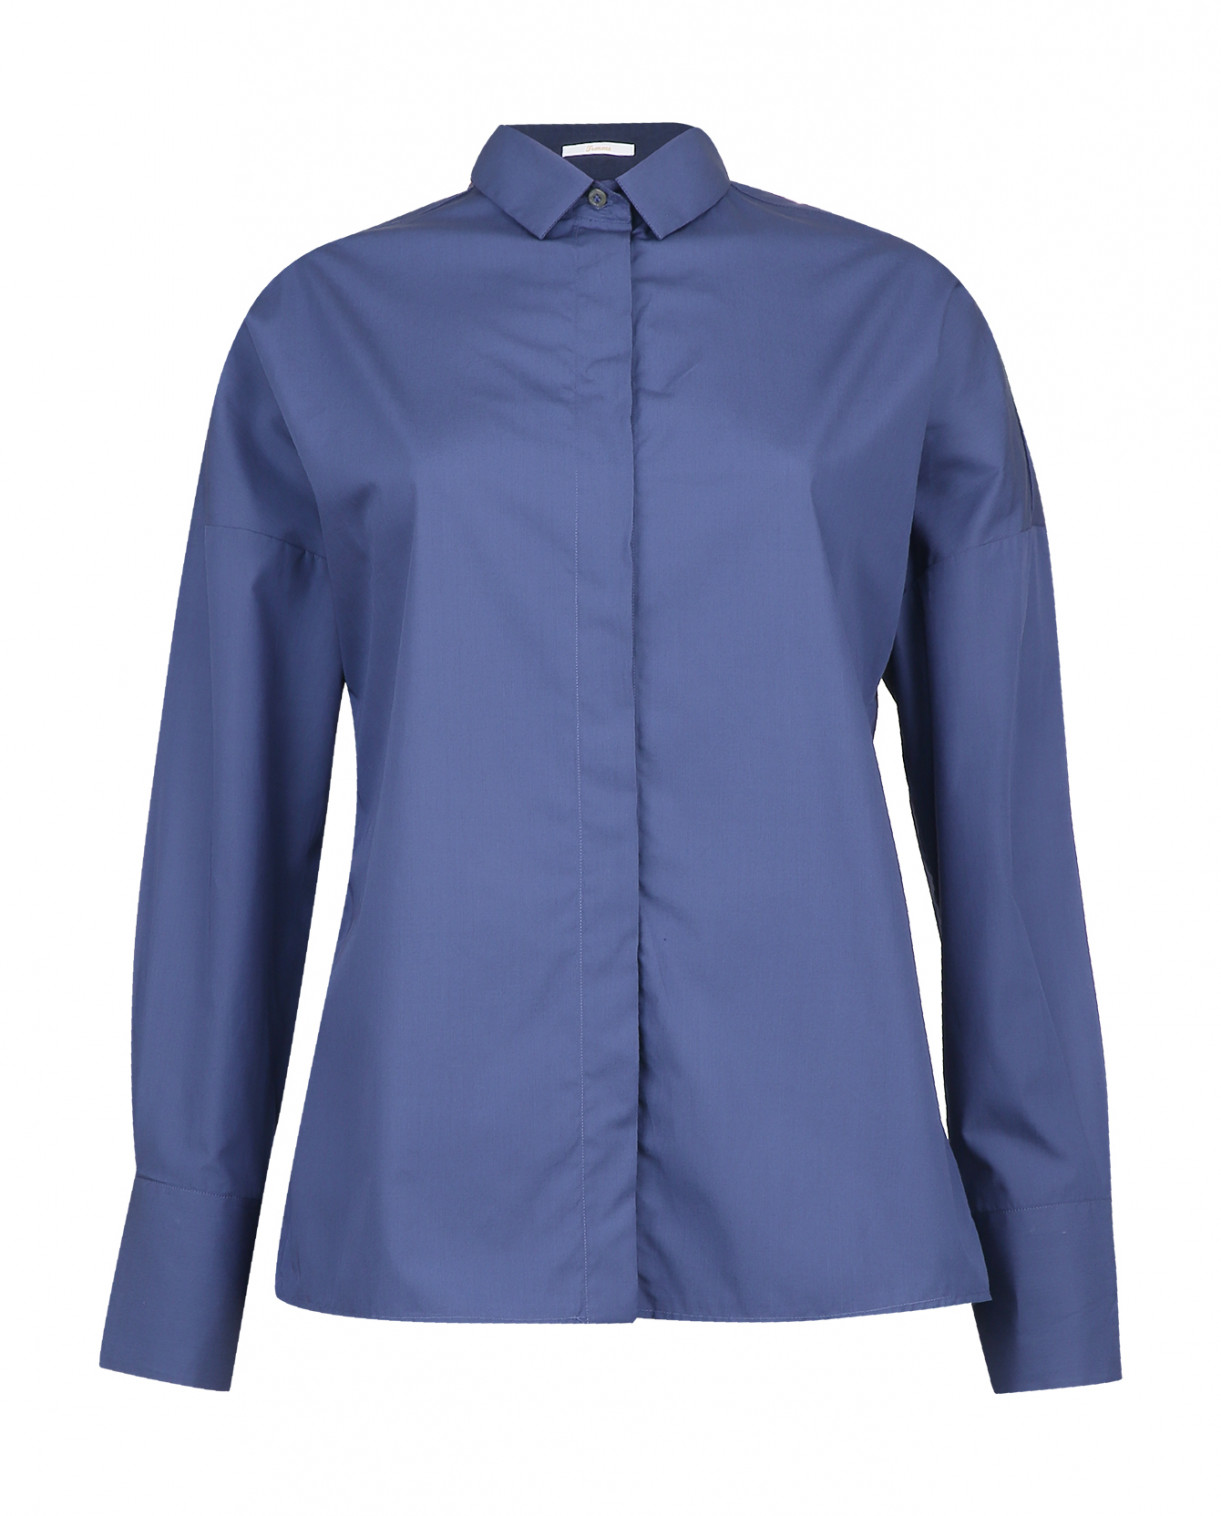 Классическая рубашка из хлопка с рукавами-летучая мышь Robert Friedman  –  Общий вид  – Цвет:  Синий